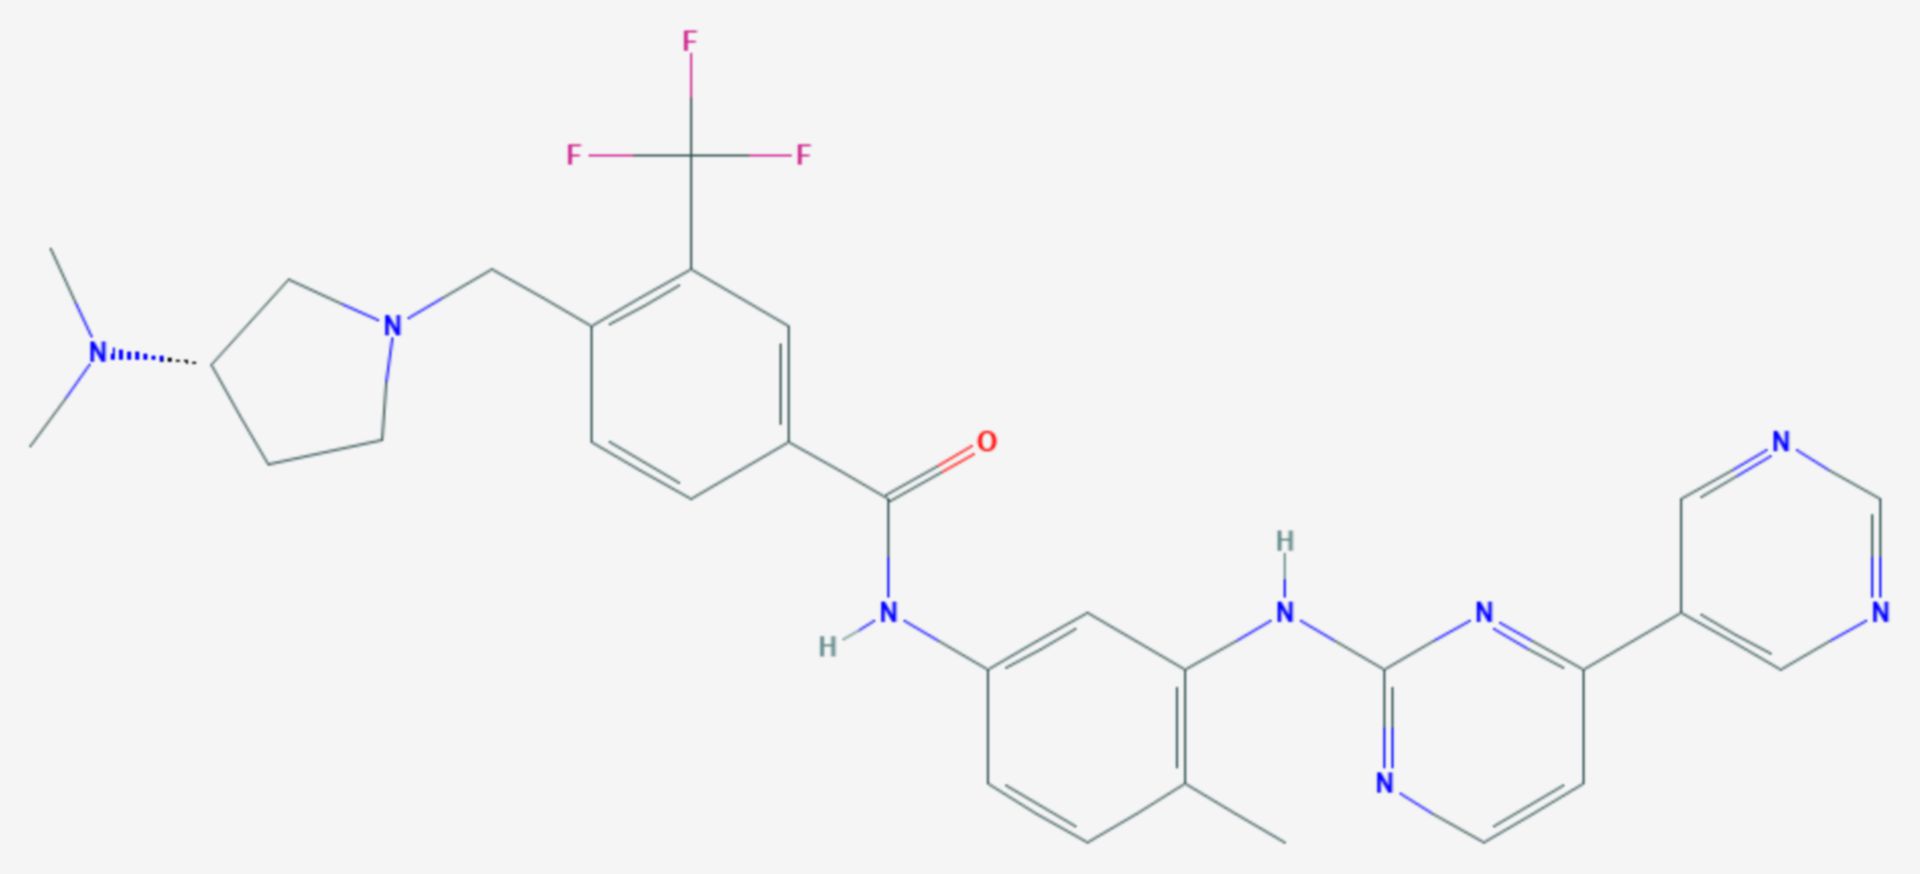 Bafetinib (Strukturformel)